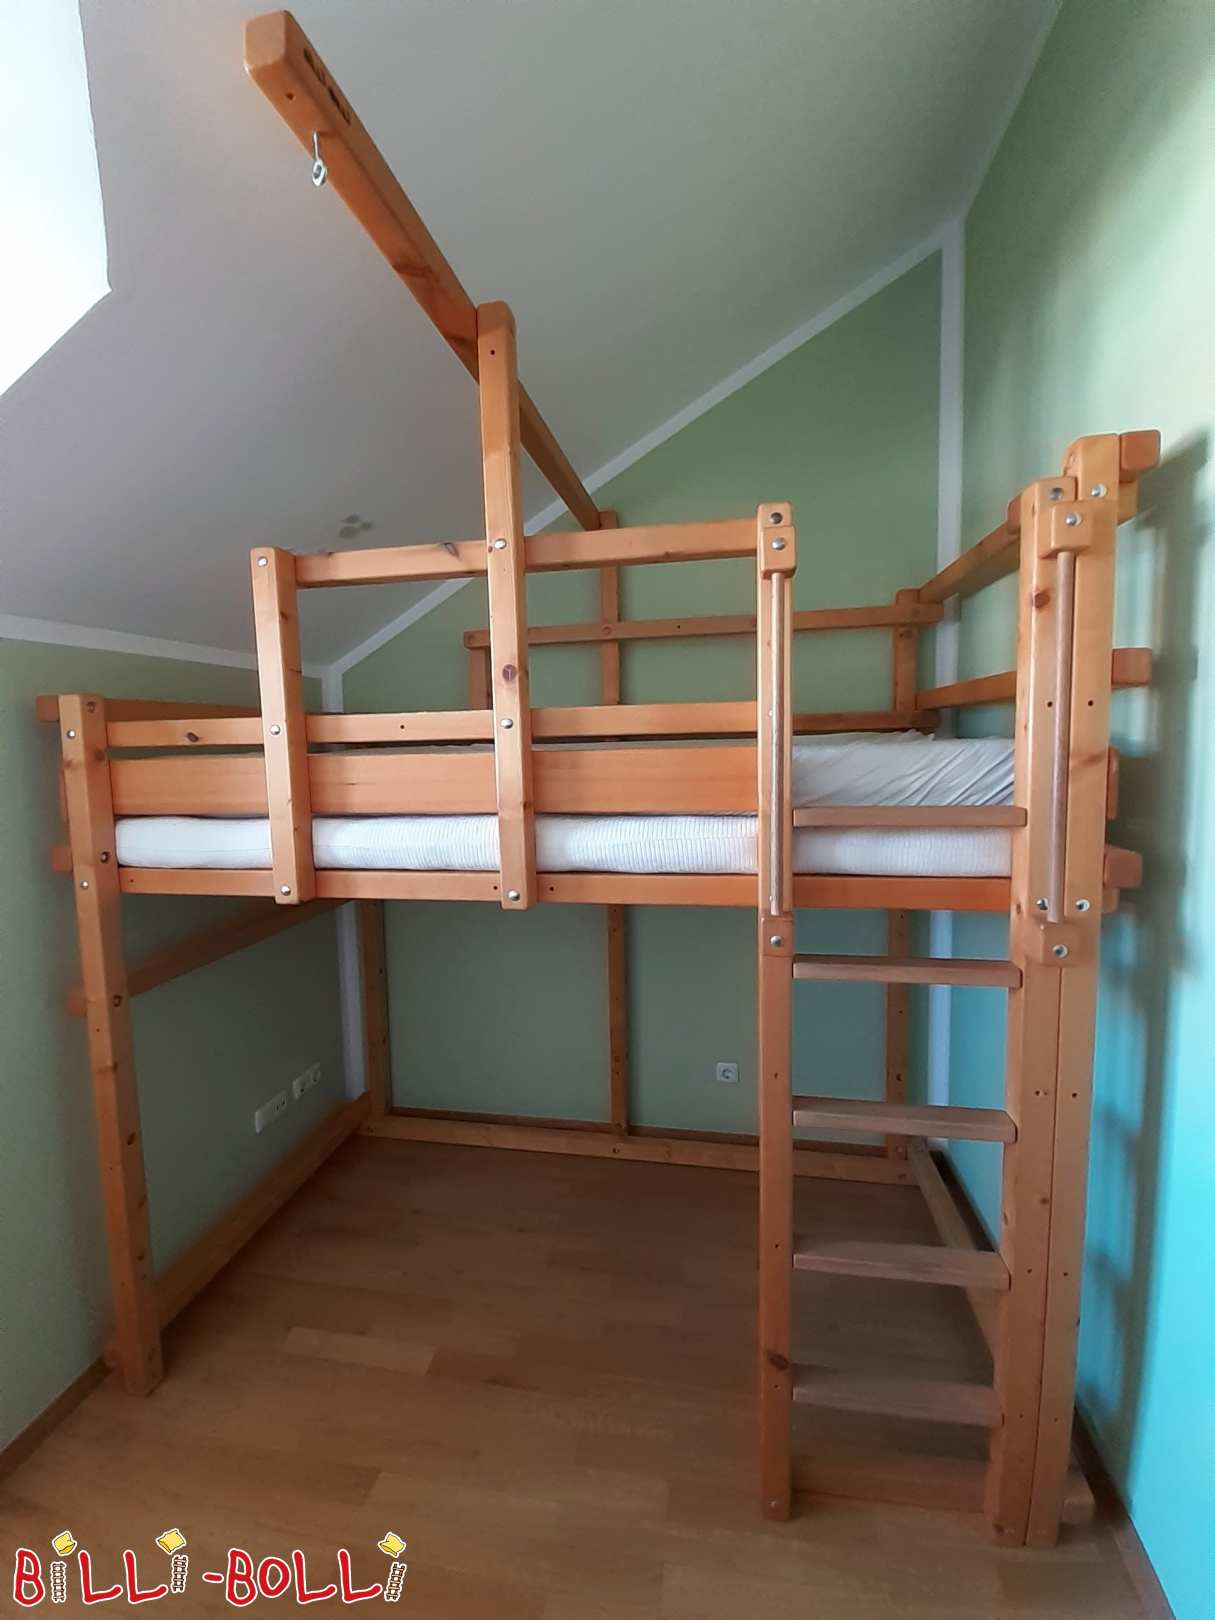 Podkrovní postel roste s vámi, smrk medově zbarvený v Mnichově (Kategorie: Použitá podkrovní postel)